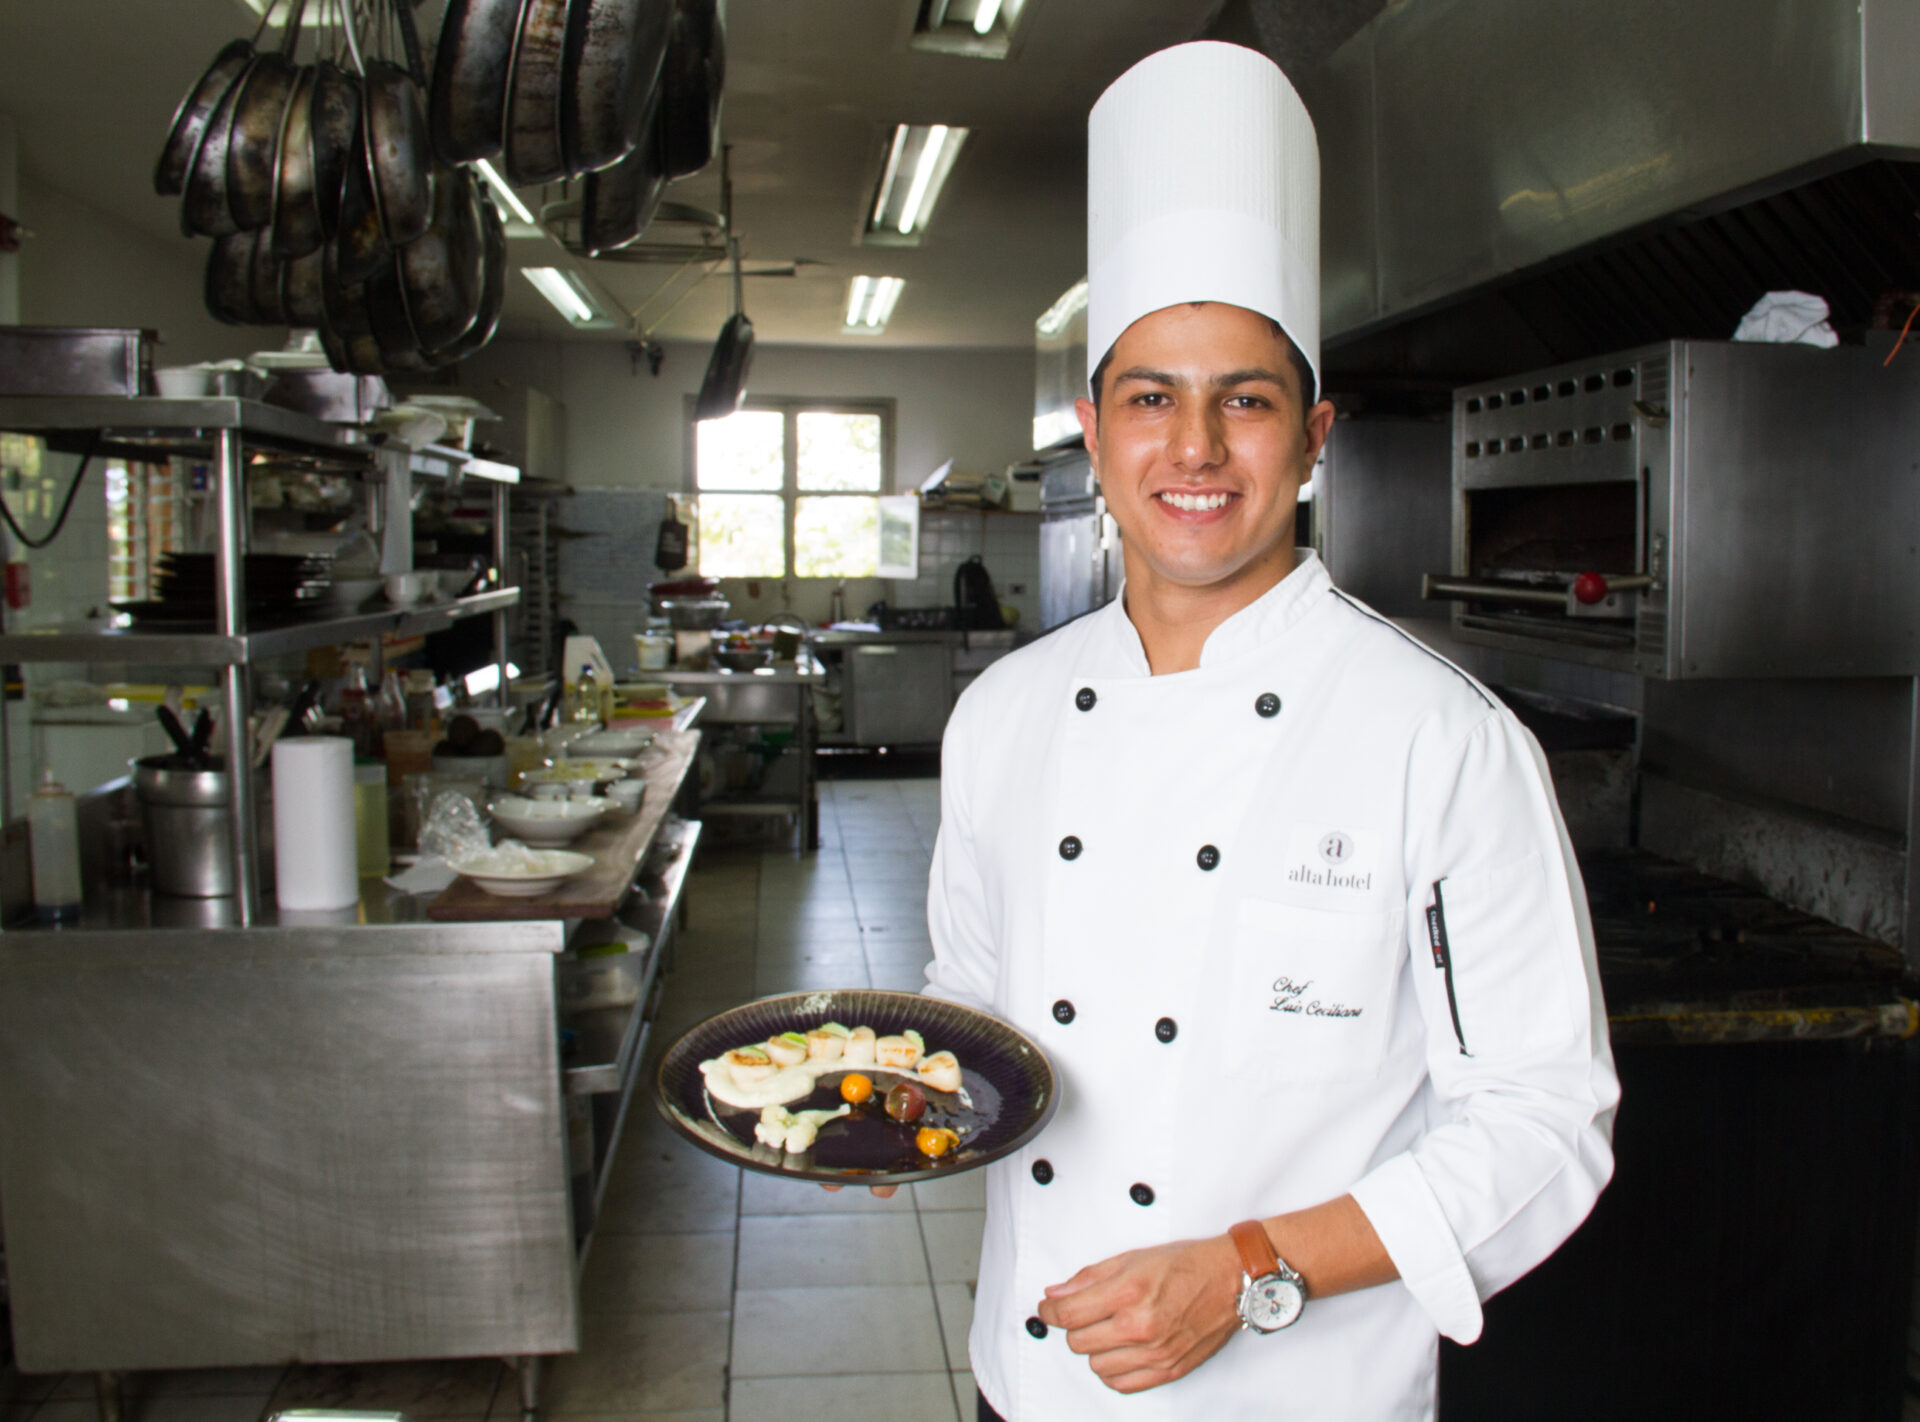 Chef tico consigue máximo reconocimiento de la alianza gastronómica más importante del mundo